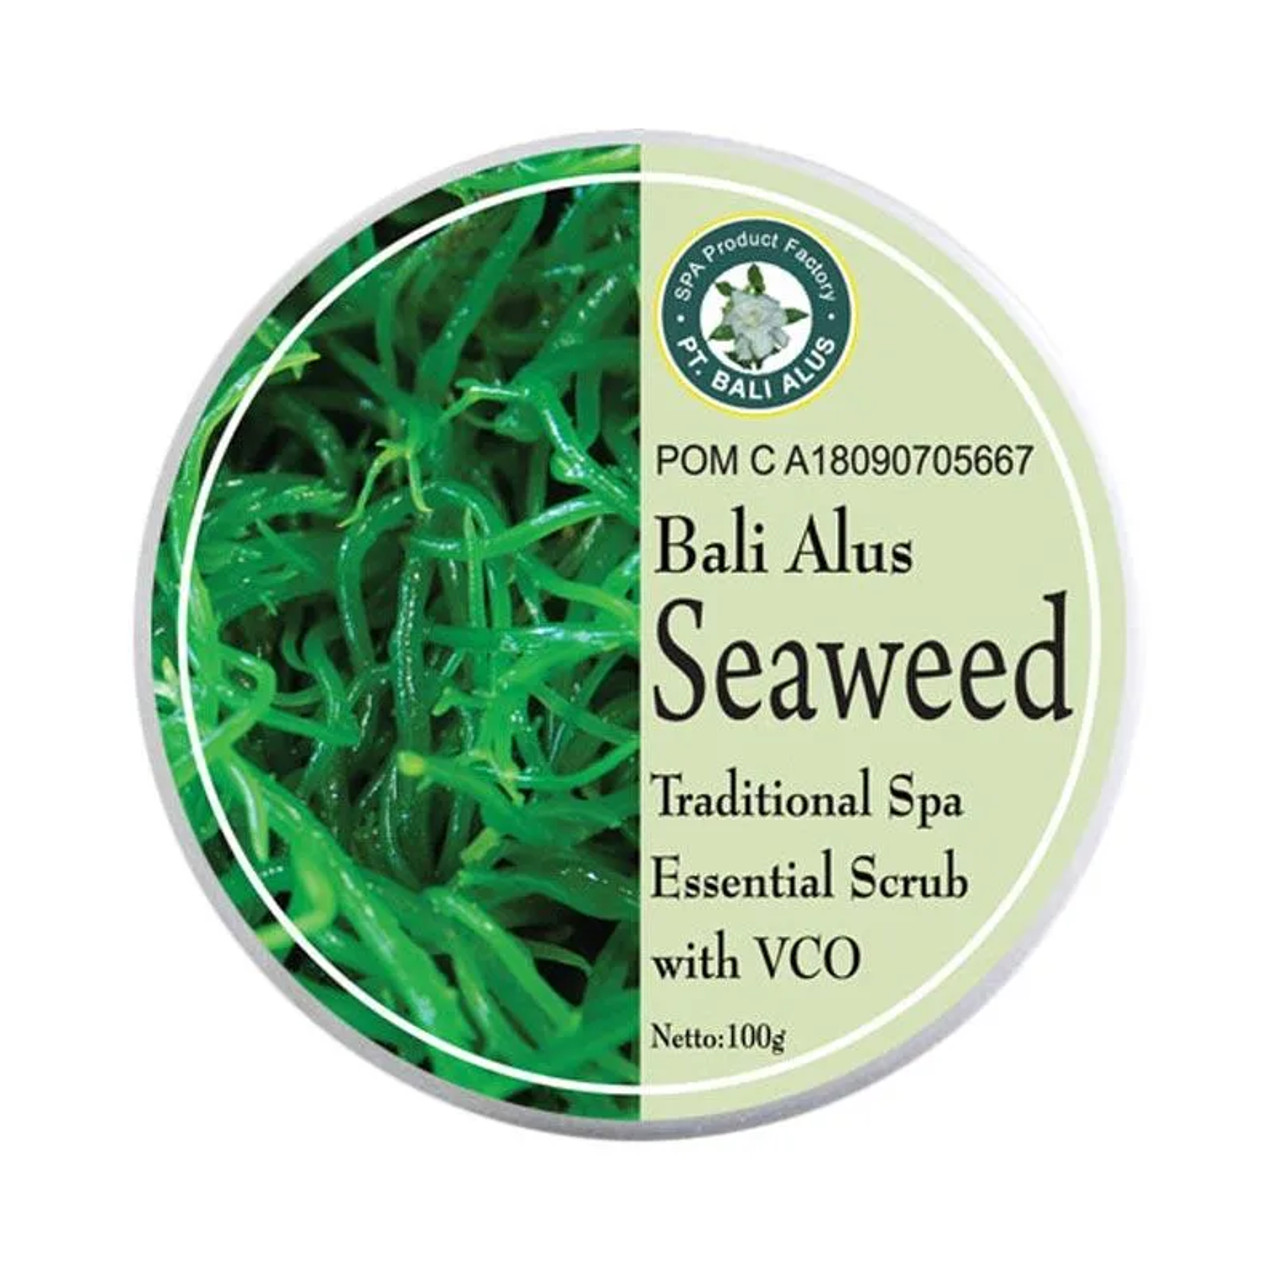 BALI ALUS Lulur Cream Scrub Seaweed, 100gr